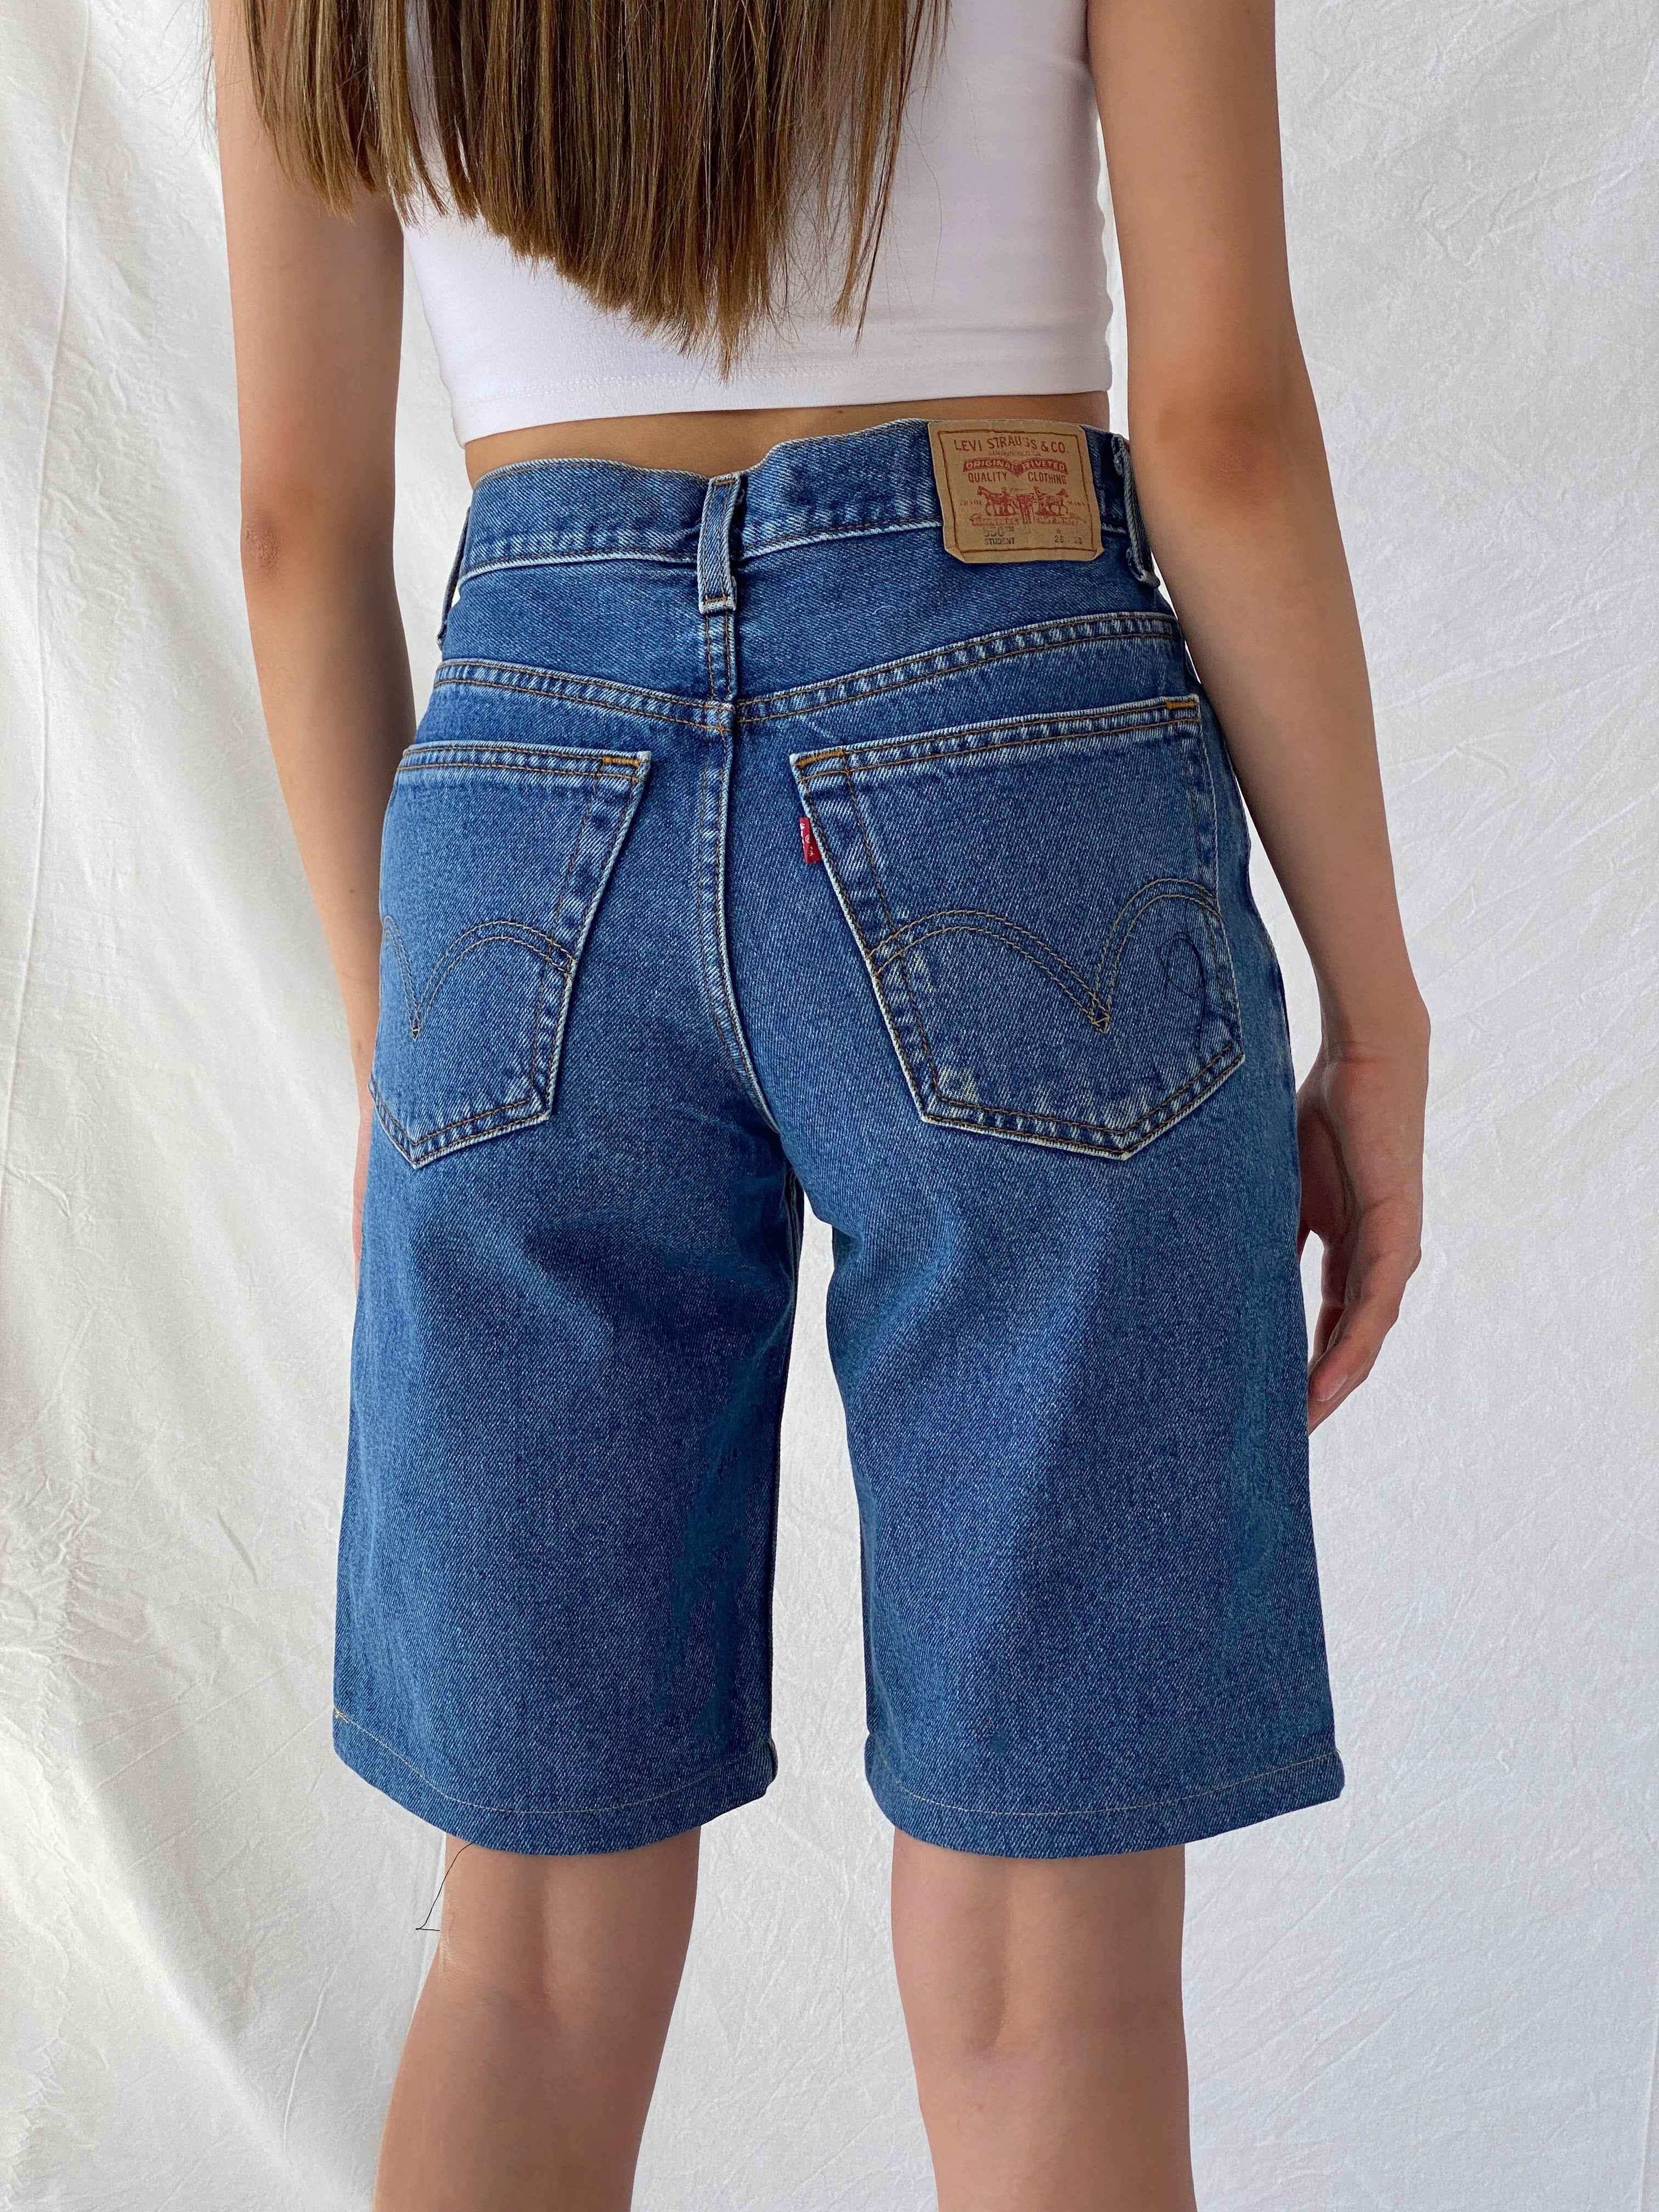 Reworked Levi’s Denim Shorts - Balagan Vintage Denim Short 00s, 90s, jeans, levis, levis jeans, Mira